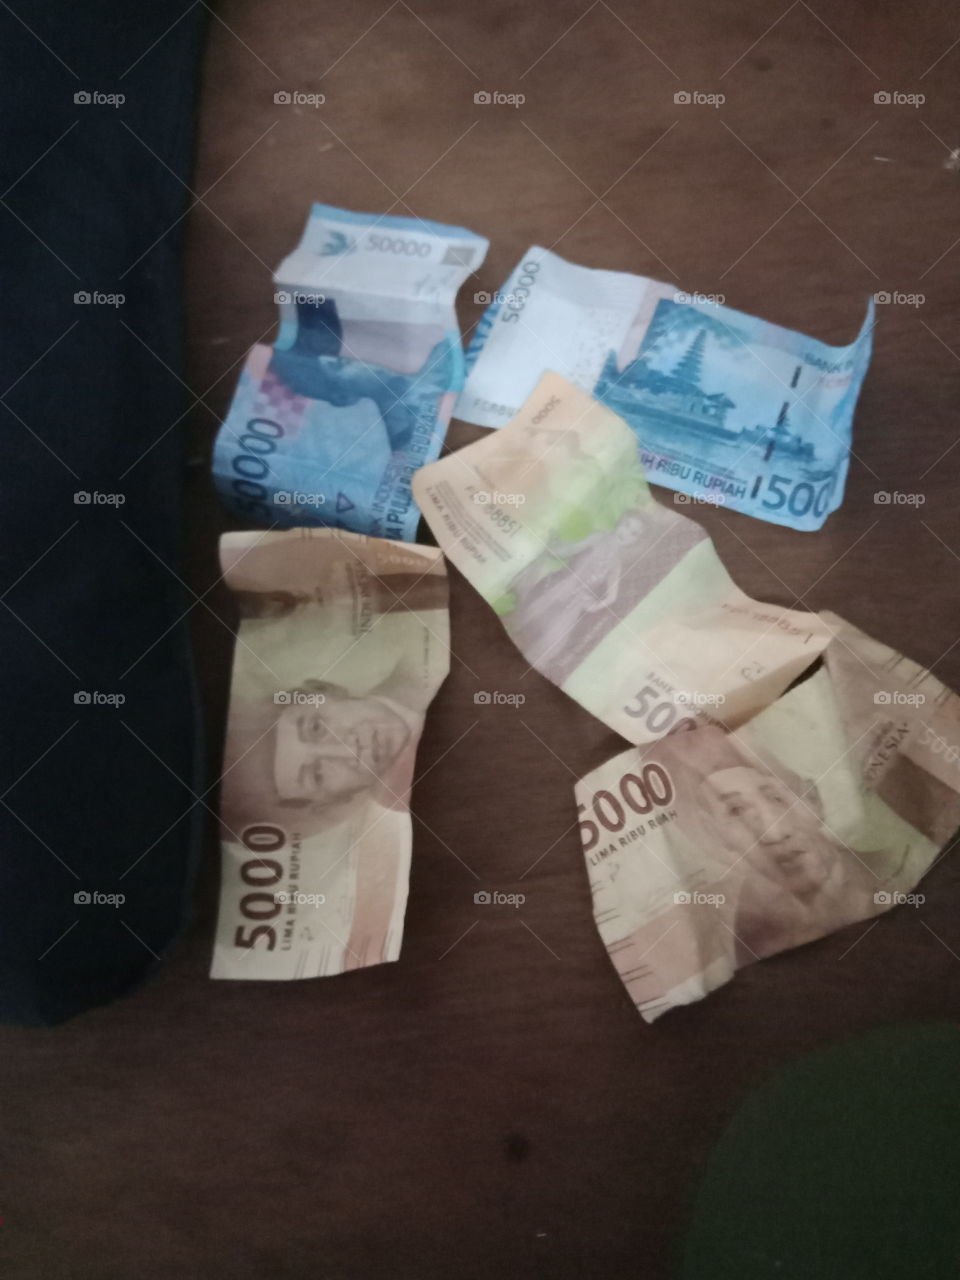 Indonesian money now